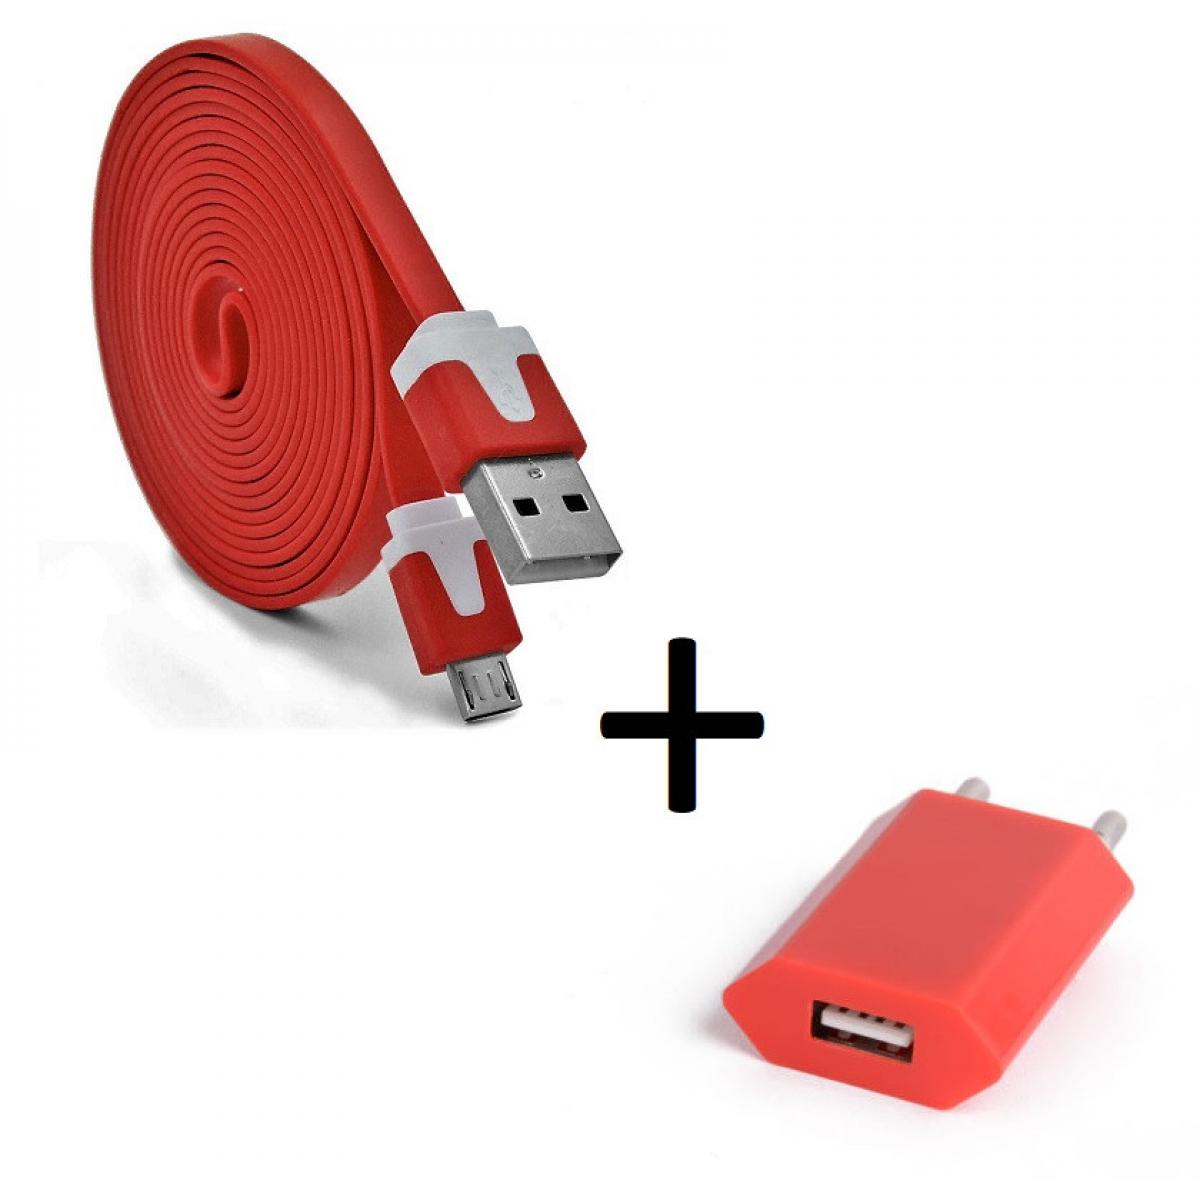 Shot - Pack Chargeur pour JBL Flip 3 Micro USB (Cable Noodle 3m + Prise Secteur Couleur USB) Android (ROUGE) - Chargeur secteur téléphone